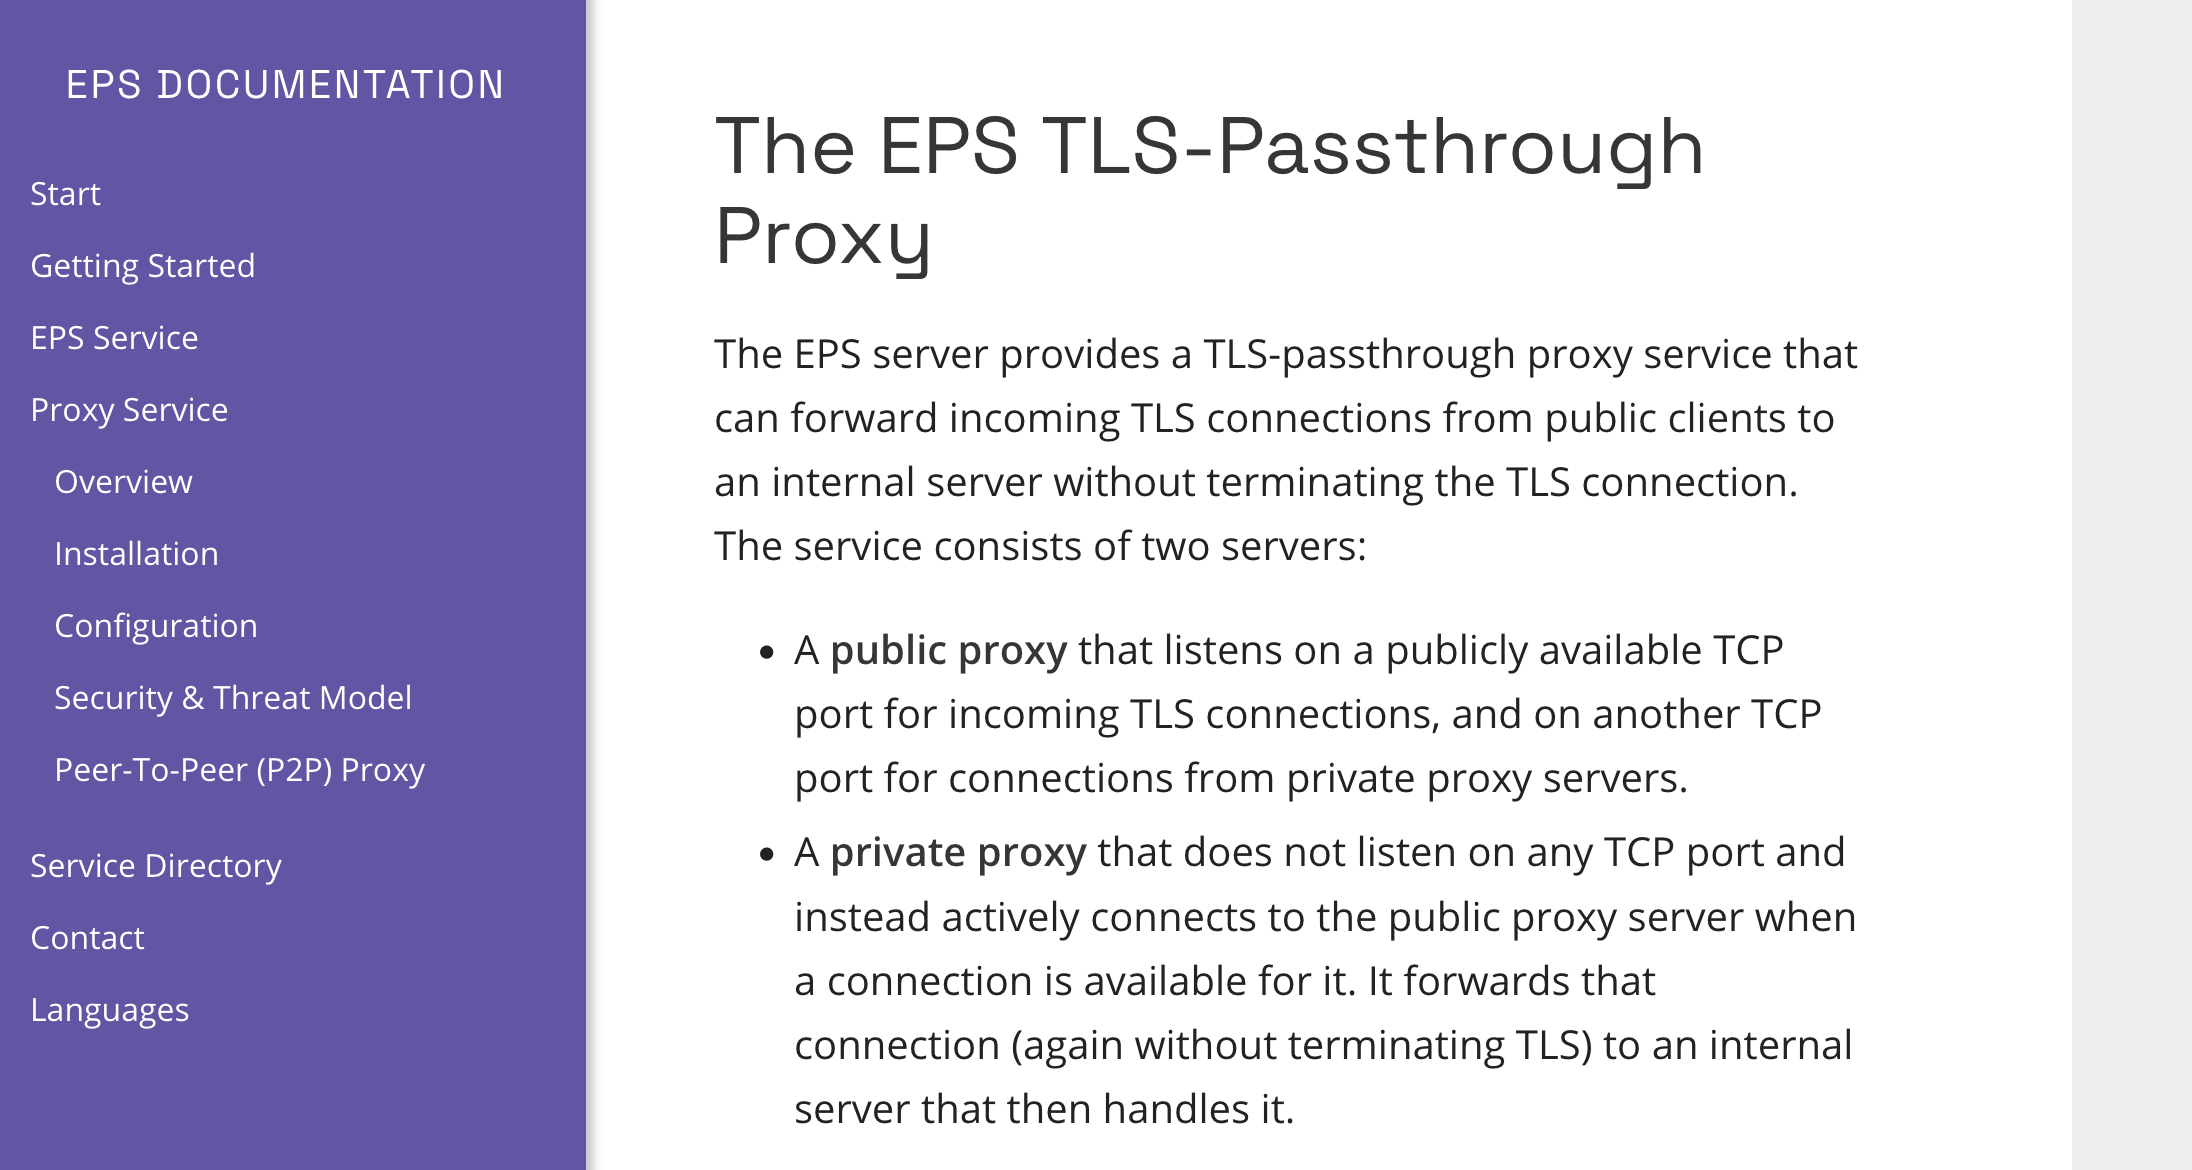 Beschreibung des EPS TLS-Passthrough, bei dem Daten über zwei Proxies weitergeleitet werden